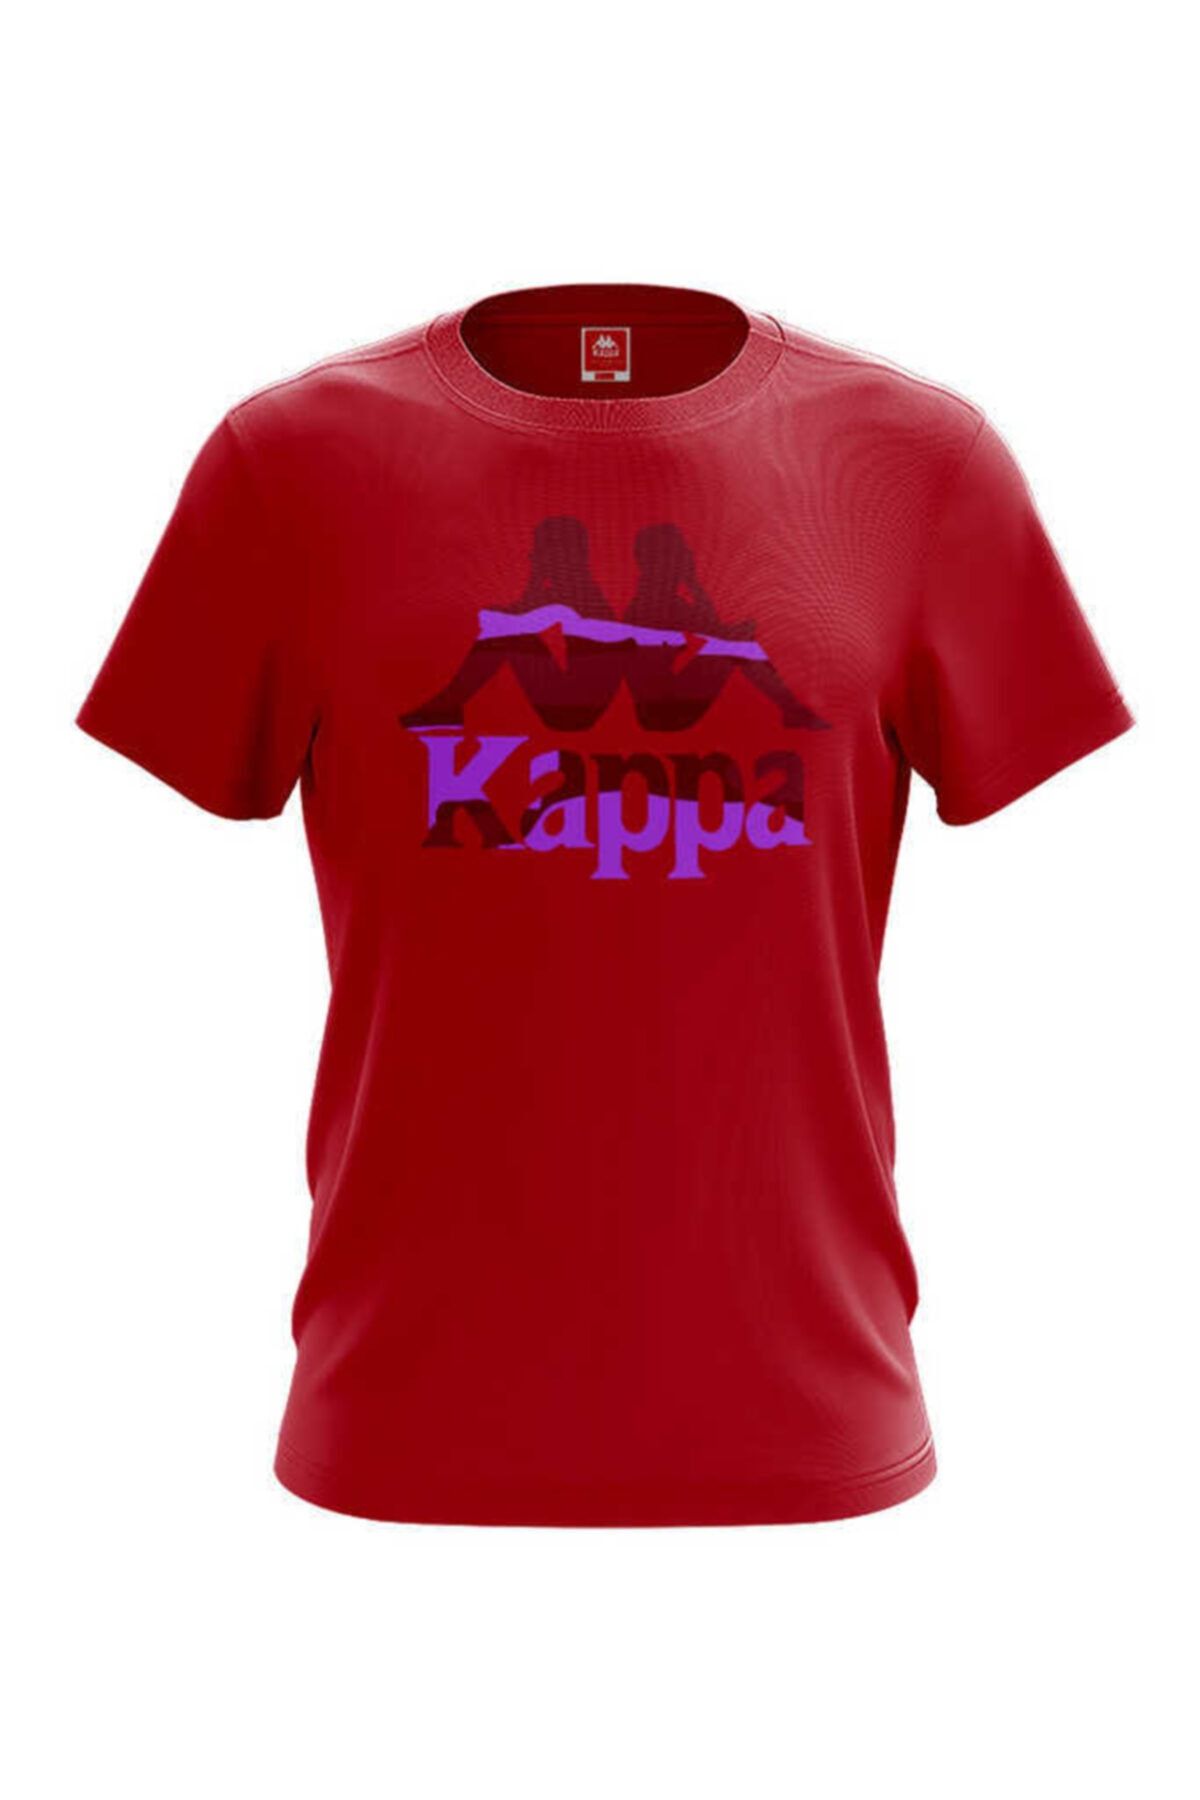 Kappa Erkek Zelkal Kırmızı Baskılı T-shirt